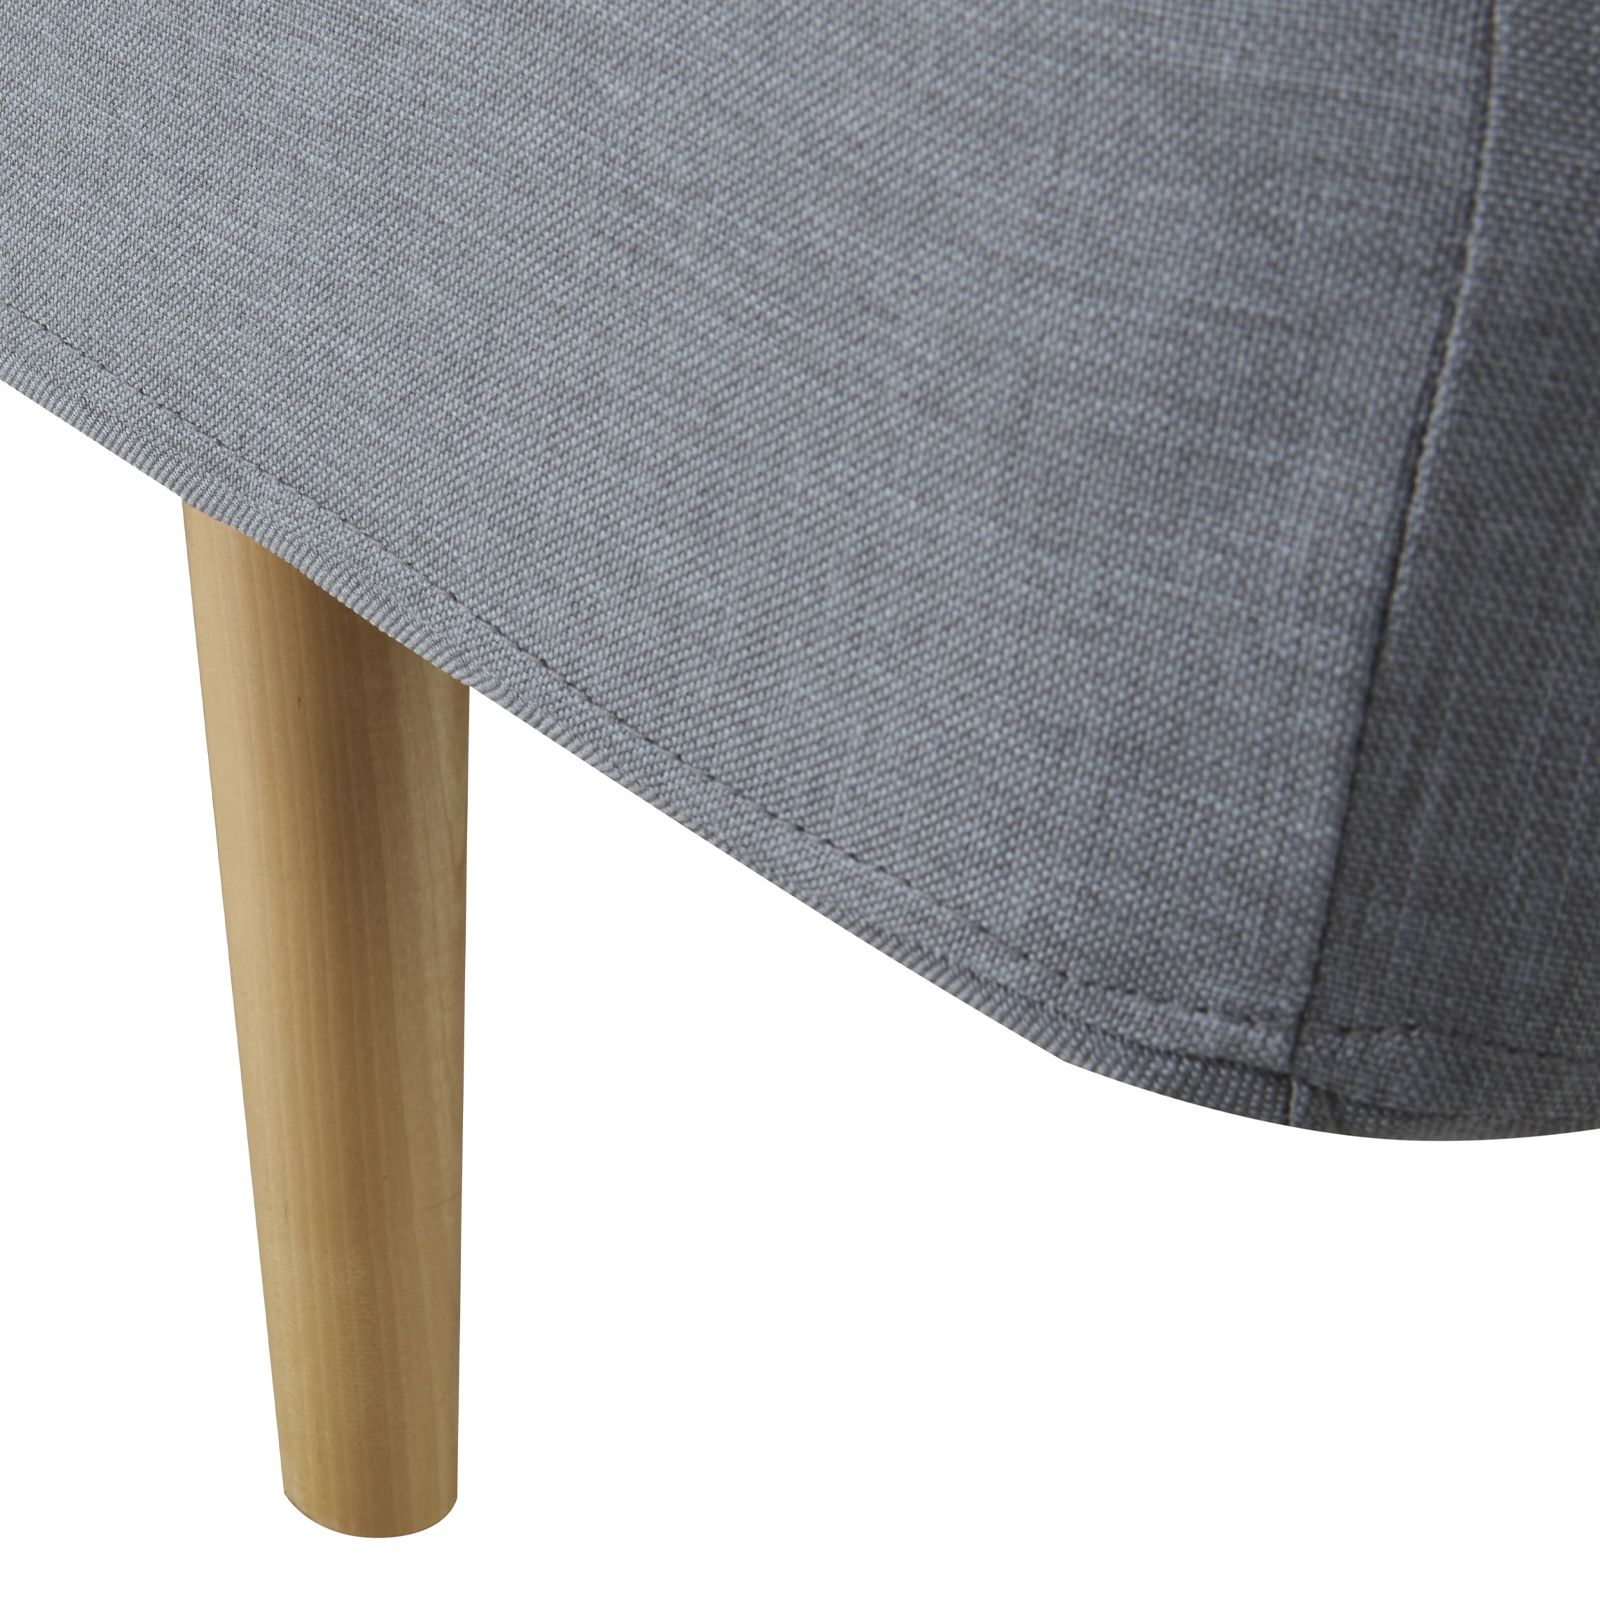 PERGAR | Sofá cama tapizado en gris (178 x 85 x 79 cm) 